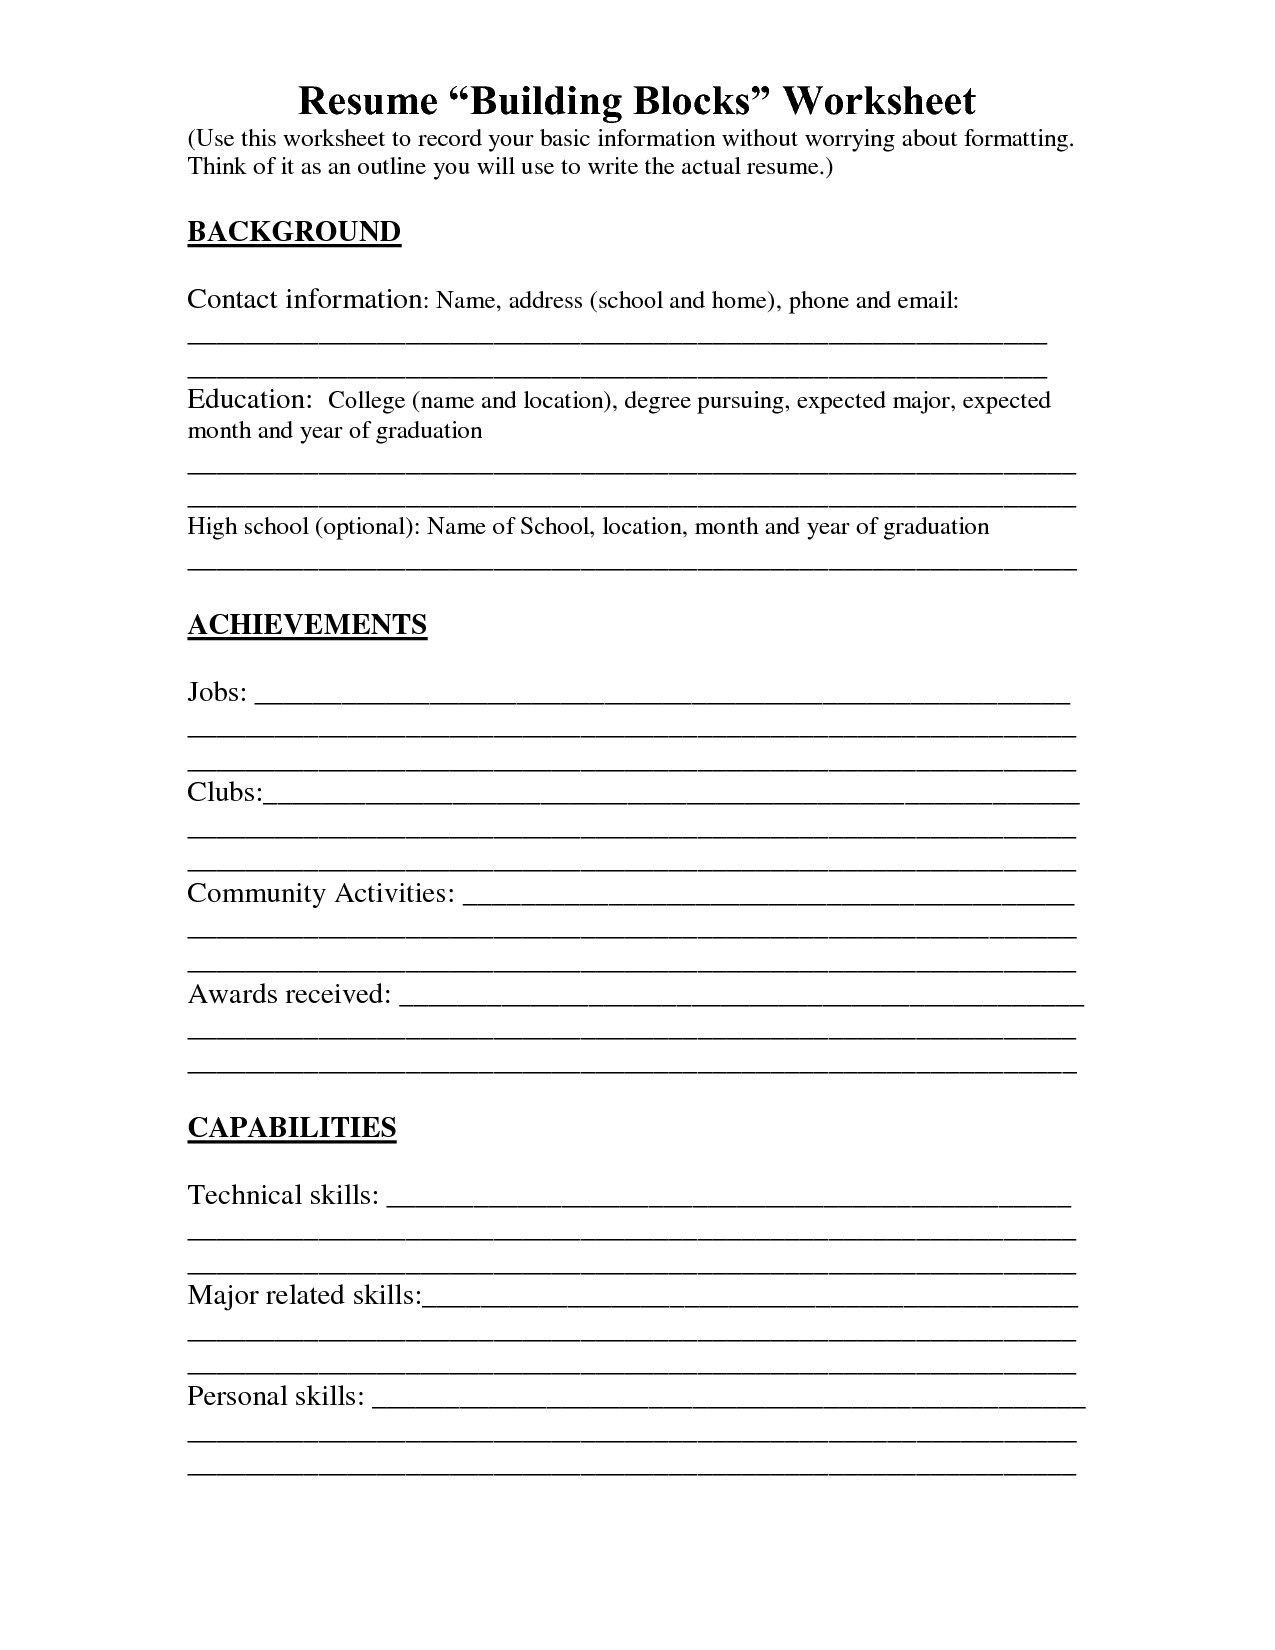 Resume Worksheet Printable And High School Builder Free Bulder Build - Free Printable High School Worksheets